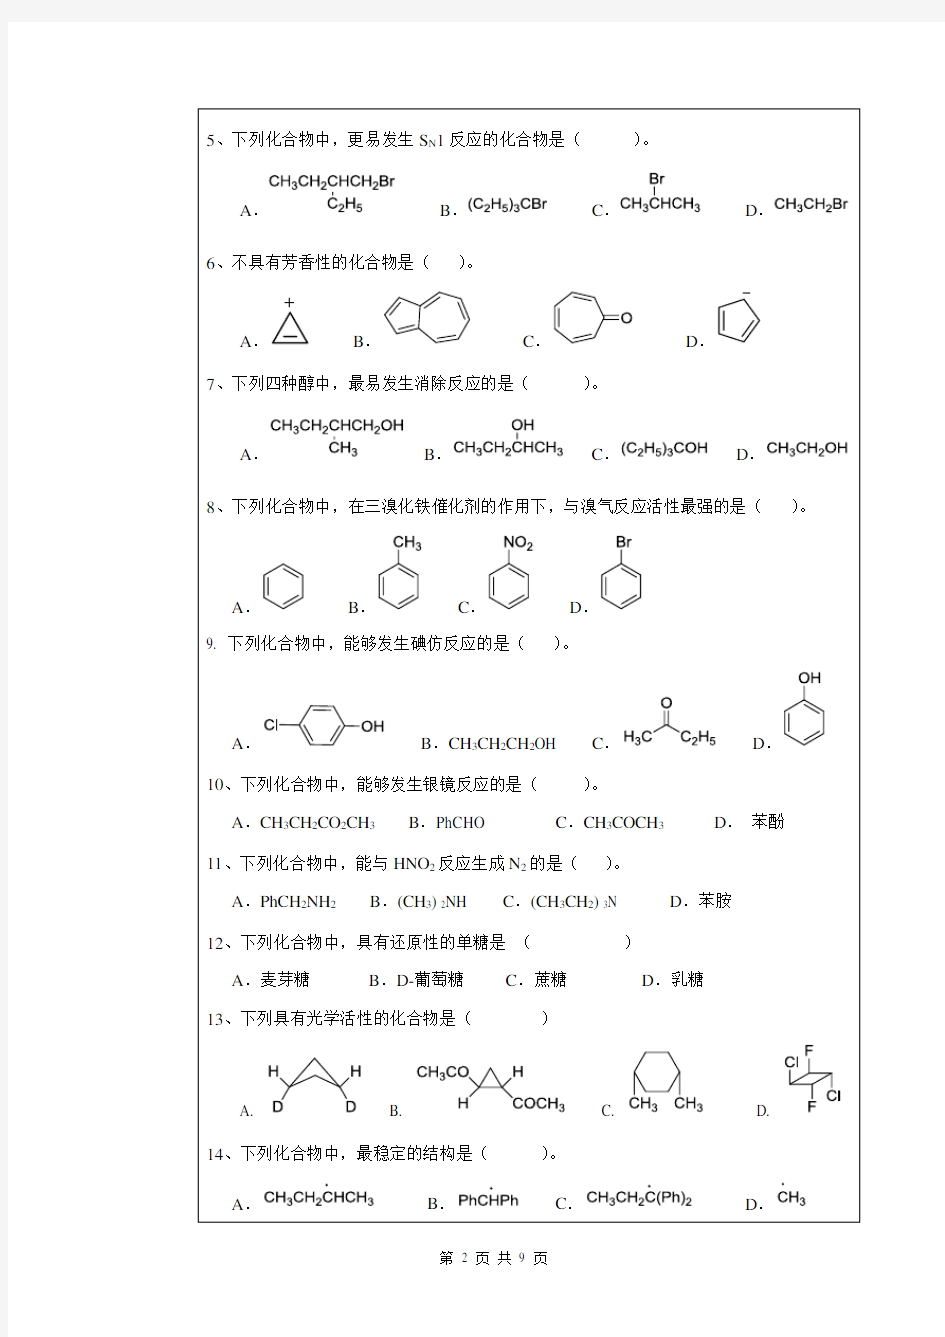 2019年武汉科技大学硕士研究生招生考试自命题试题-617有机化学_真题及答案